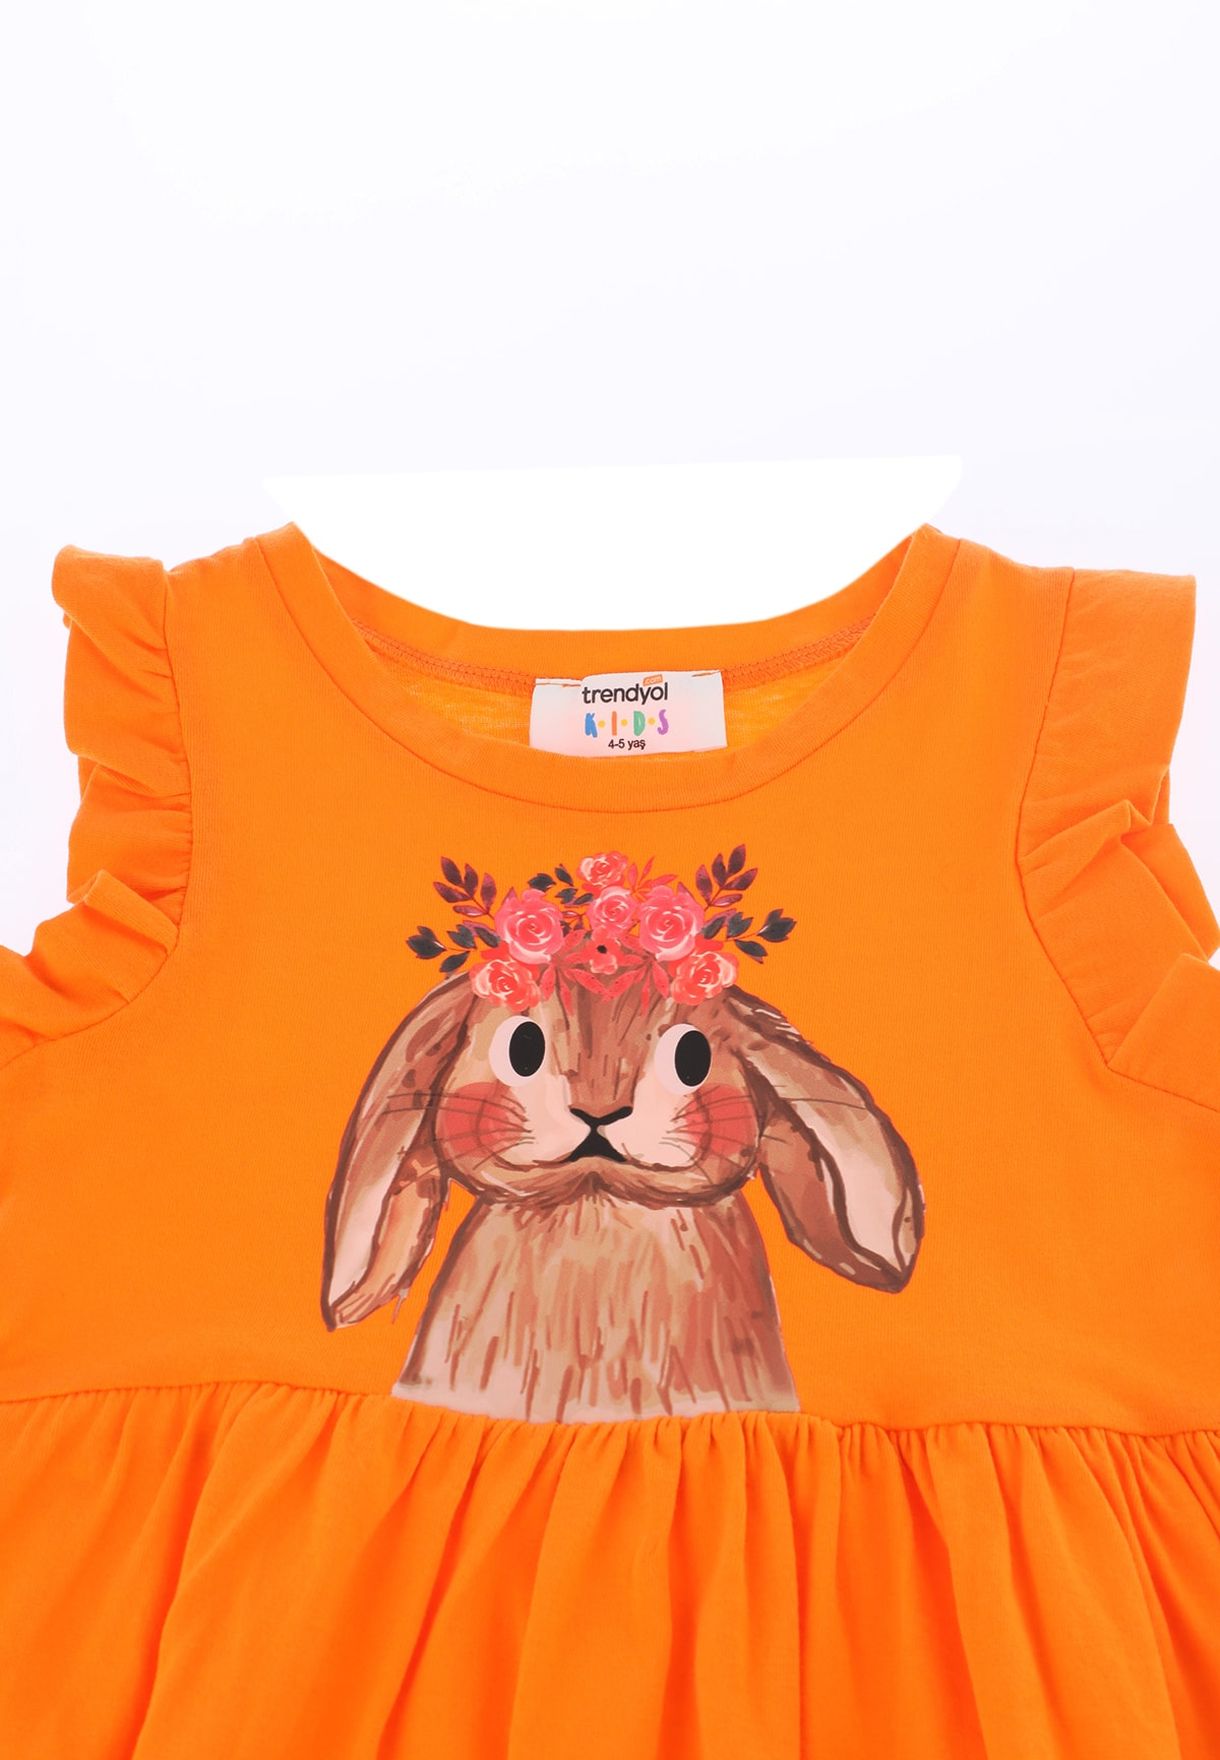 Kids Rabbit Print Dress